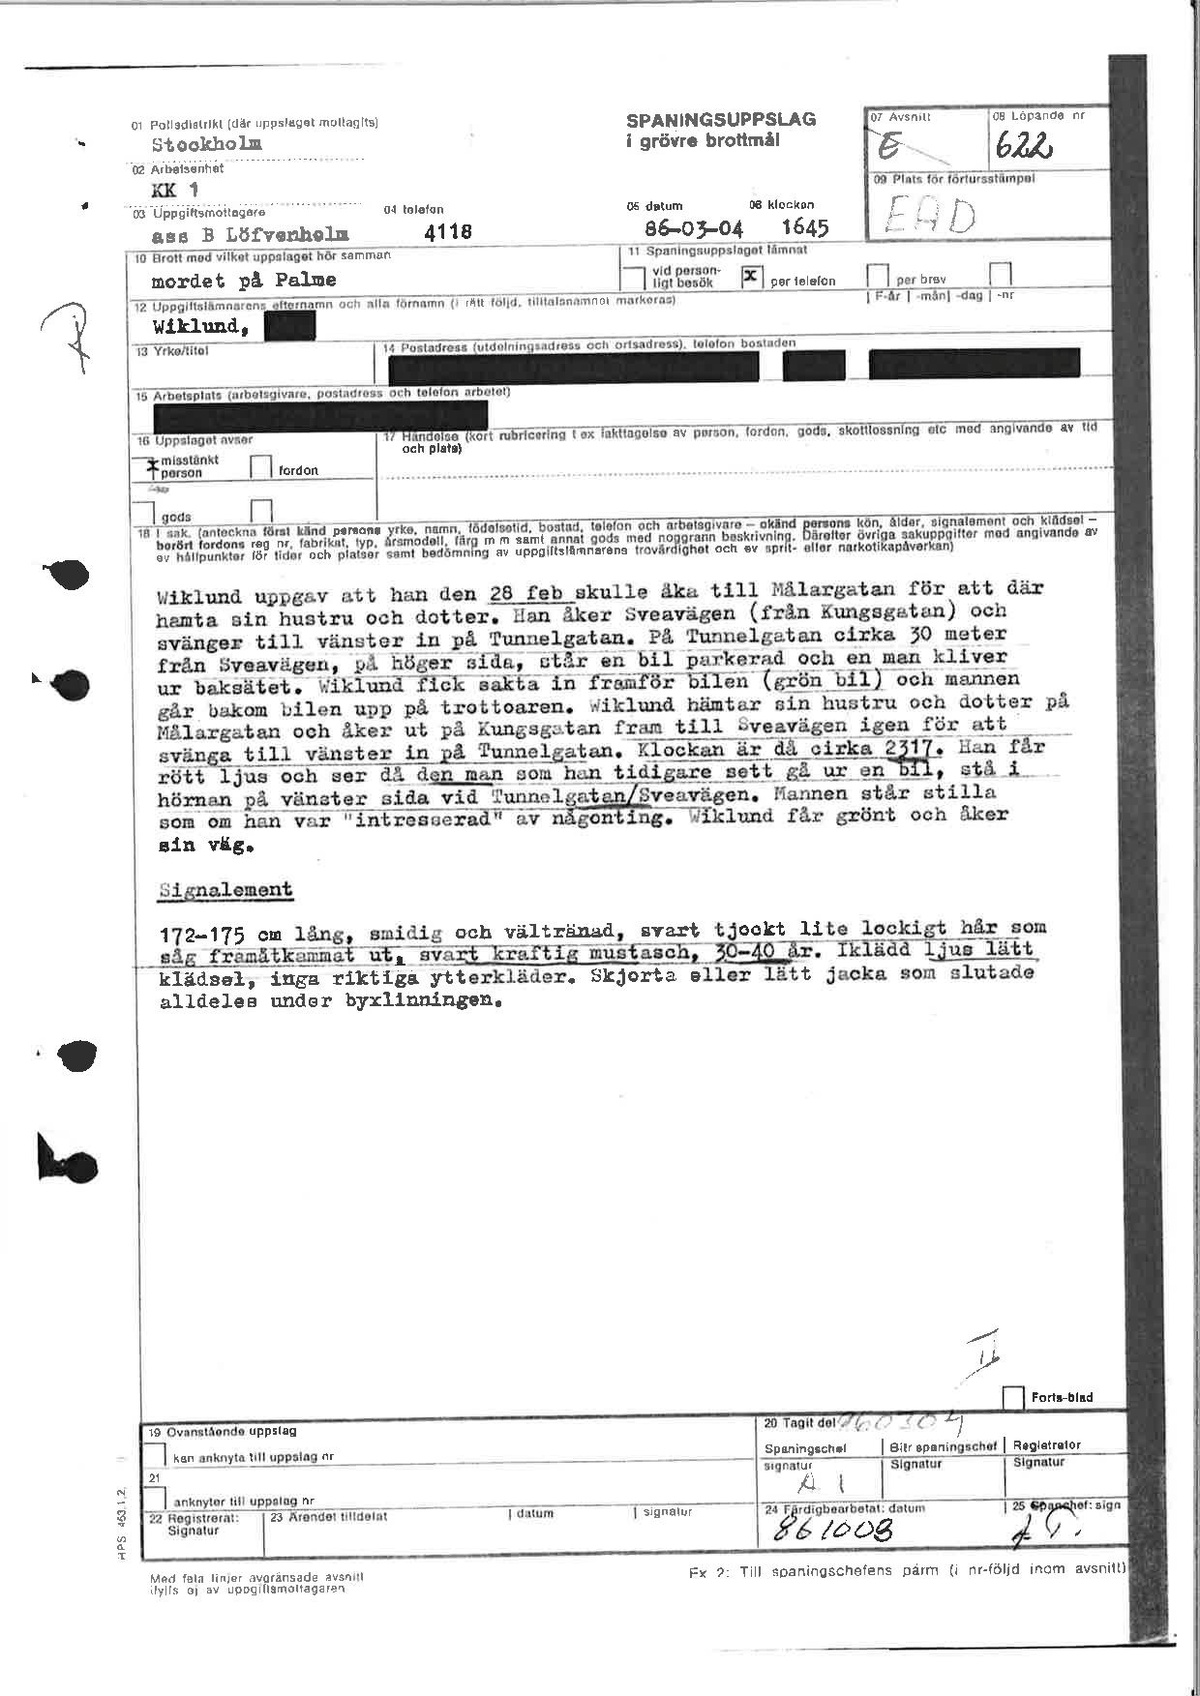 Pol-1986-03-04 1645 EAD622 Förhör med Wiklund.pdf